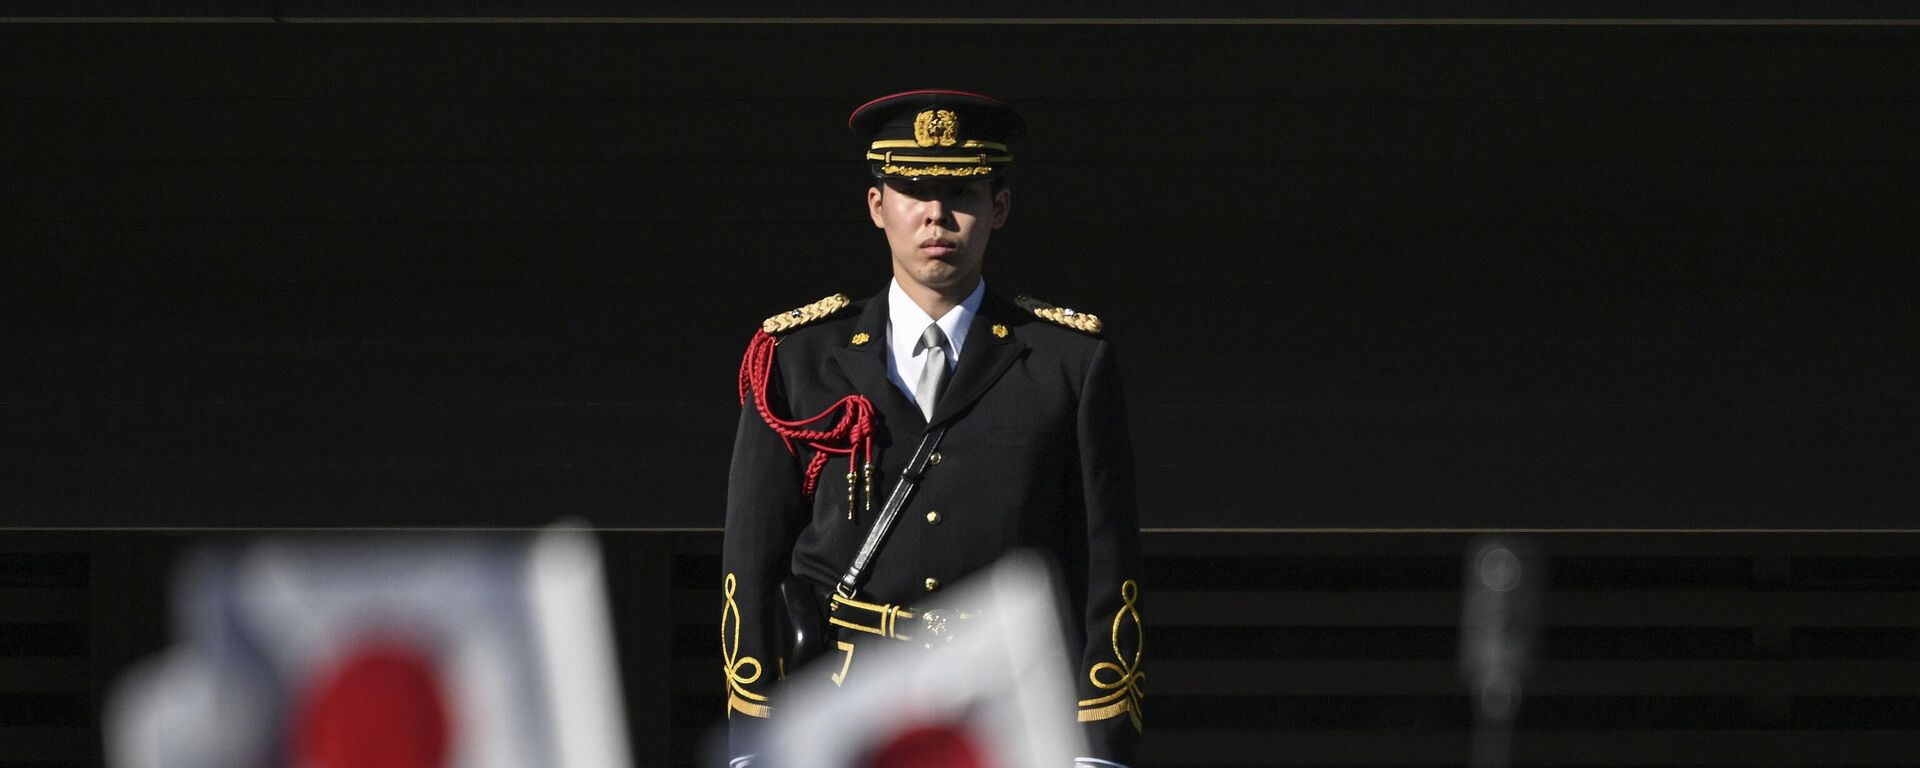 Simpatizantes agitam bandeiras na frente de guarda de membros da família real do Japão durante a tradicional cerimônia de saudação de ano-novo no Palácio Imperial, em Tóquio. Japão, 2 de janeiro de 2023 - Sputnik Brasil, 1920, 02.02.2023